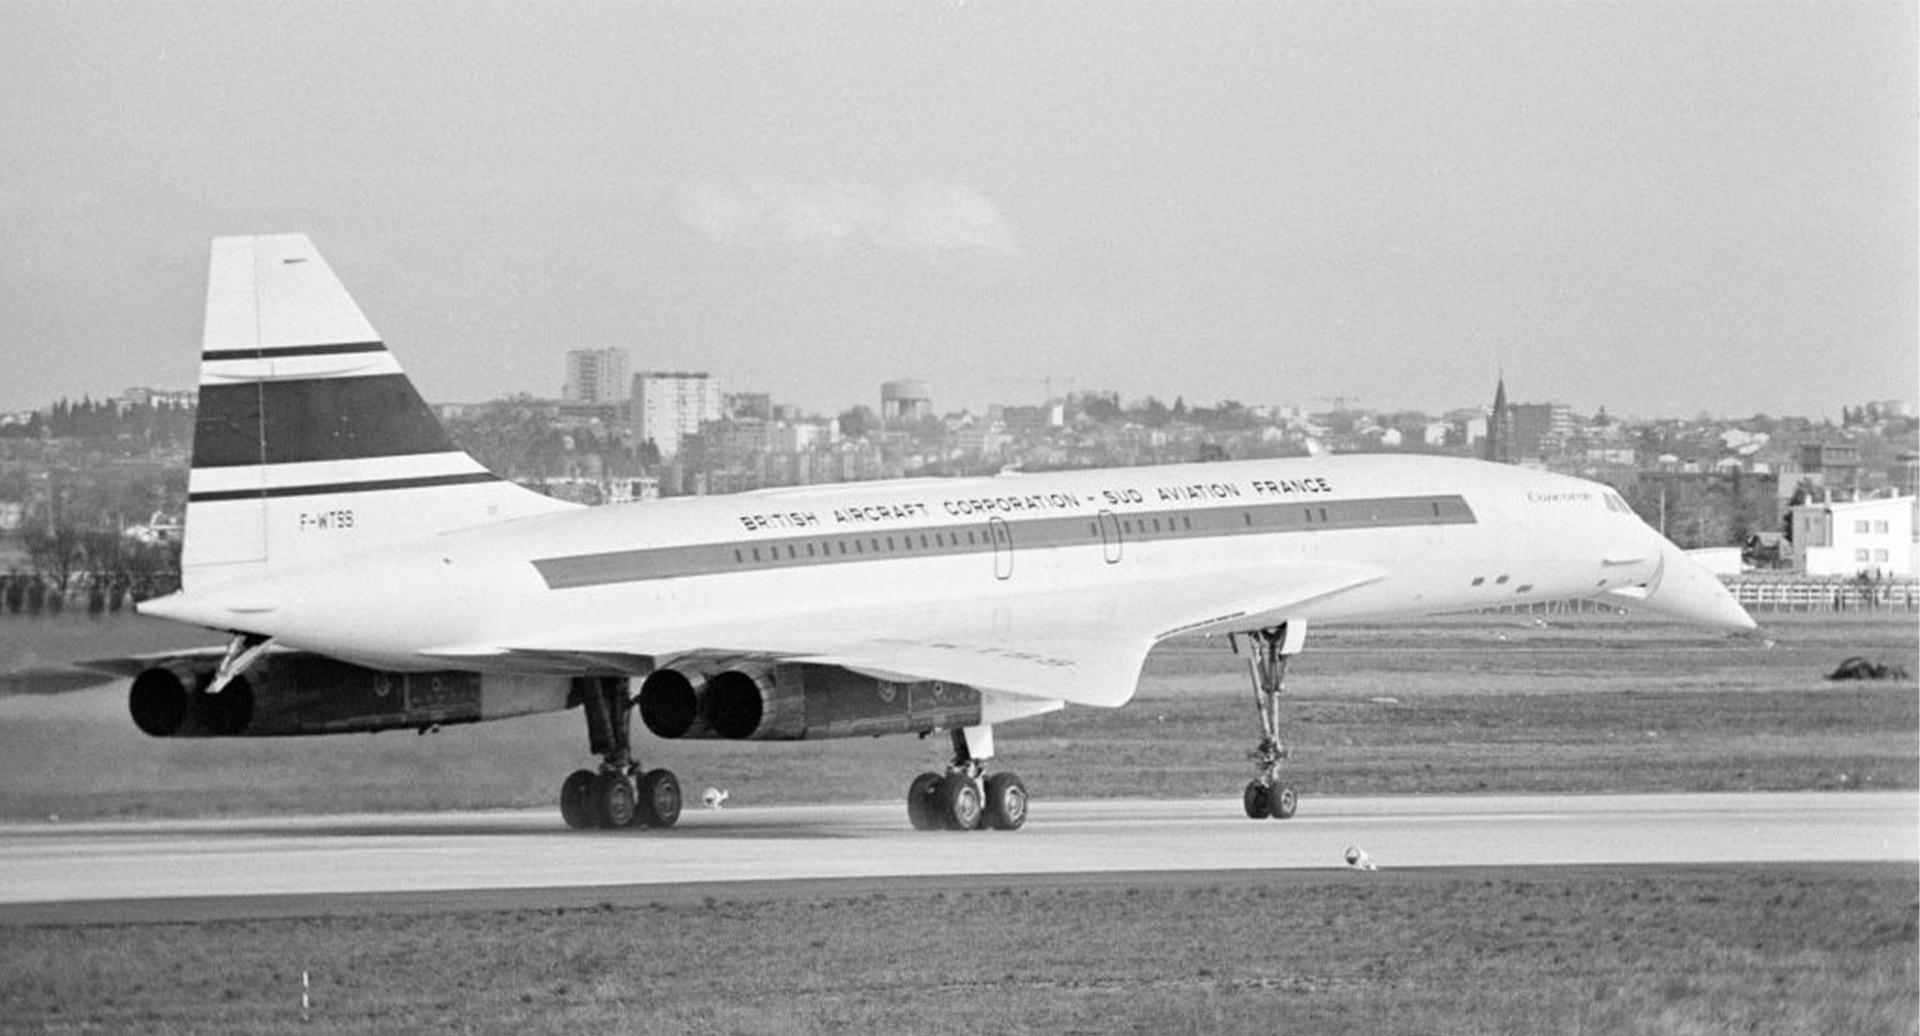 El prototipo del Concorde 001 vuela por primera vez en el aeropuerto de Toulouse, en Francia, el 2 de marzo de 1969.